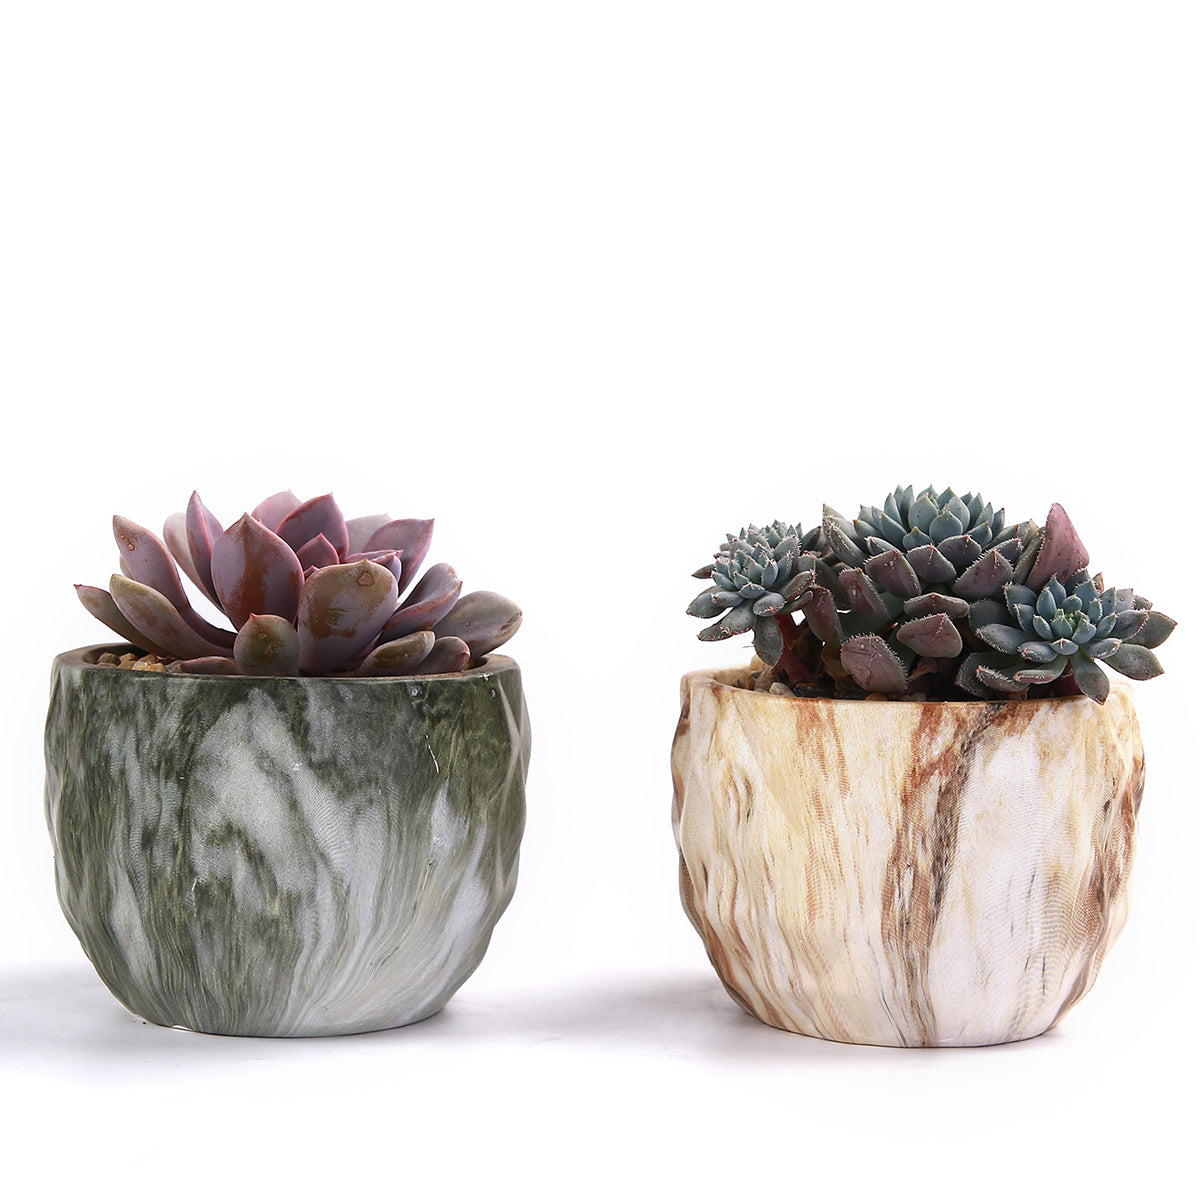 4Pcs/set Ceramic Natural Stone Style Flower Succulent Planting Pot Garden Decor